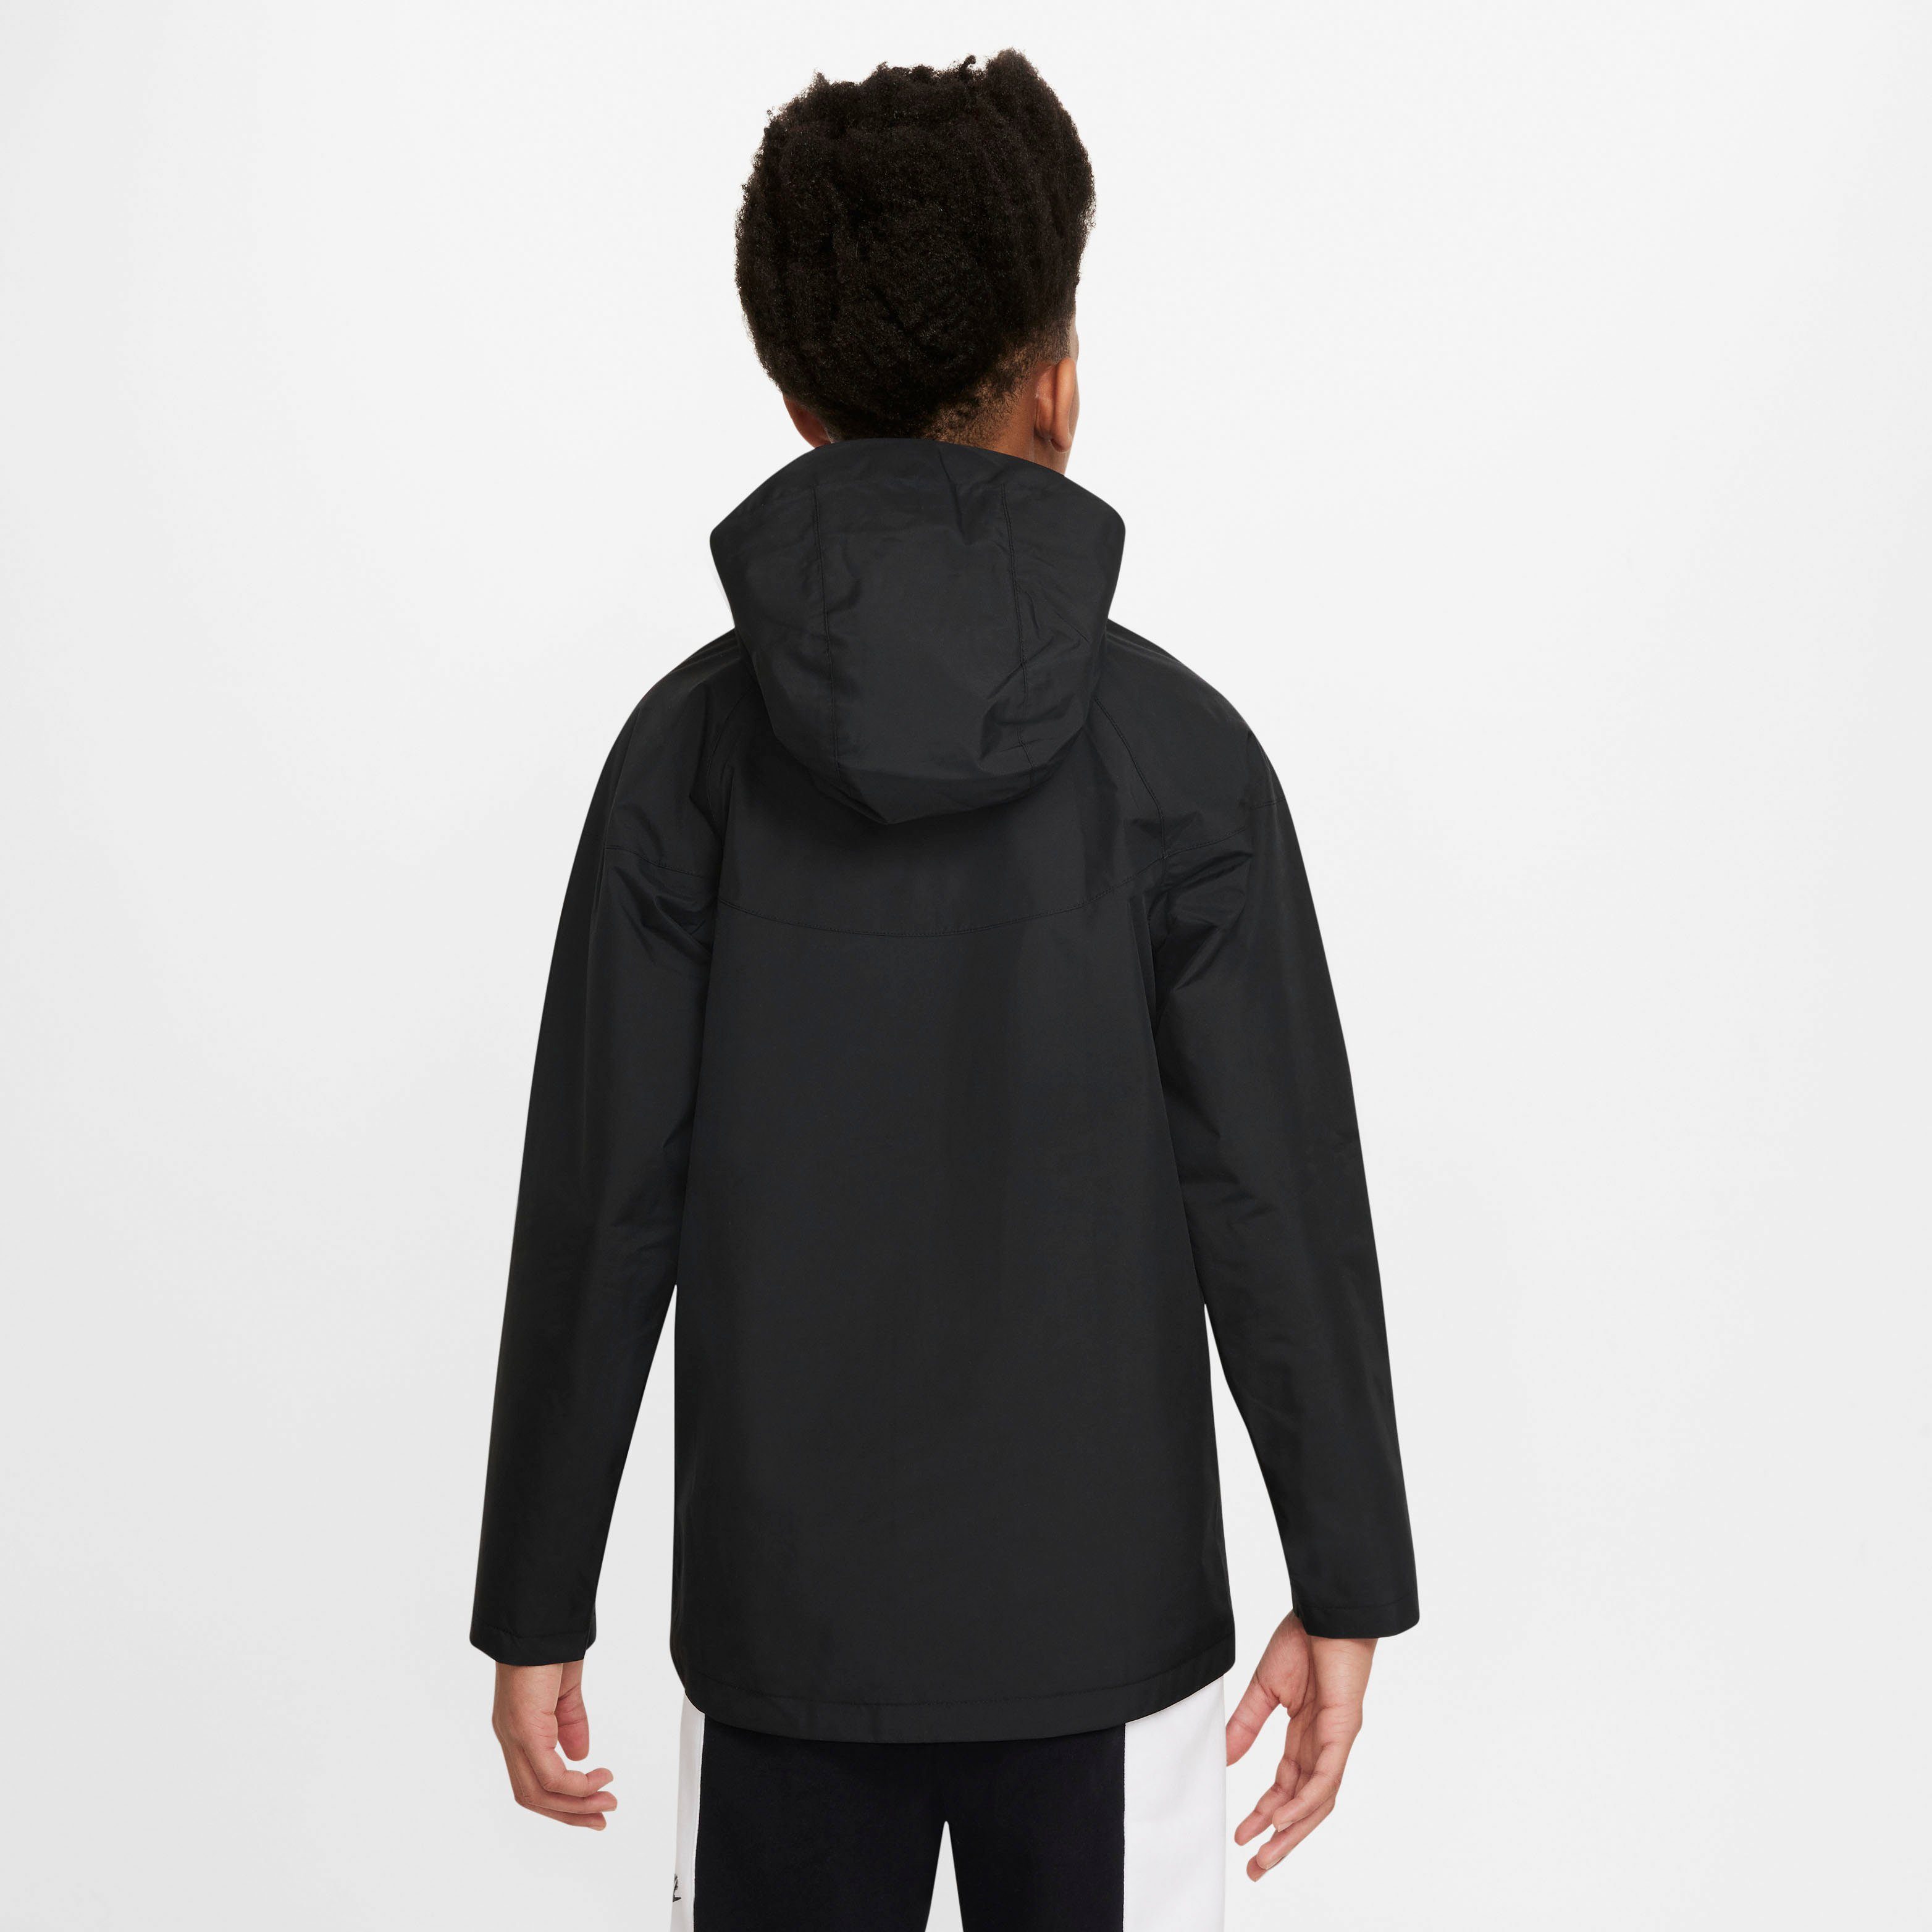 Nike Kids' Windbreaker Windrunner (Boys) BLACK/BLACK/WHITE Storm-FIT Big Jacket Sportswear